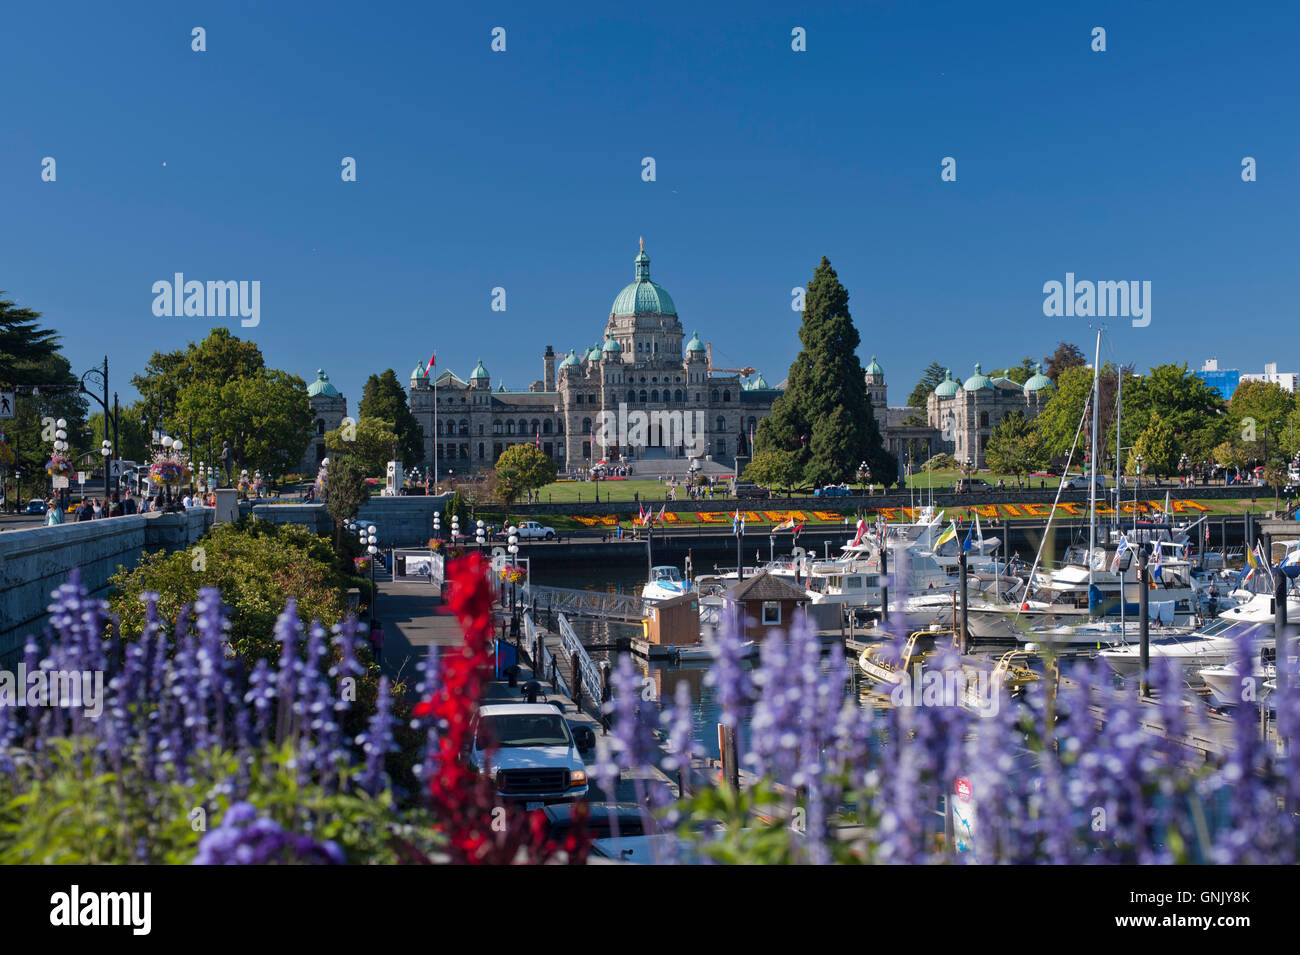 British Columbia Legislature building, Victoria, BC, Canada Flowers in foreground Stock Photo